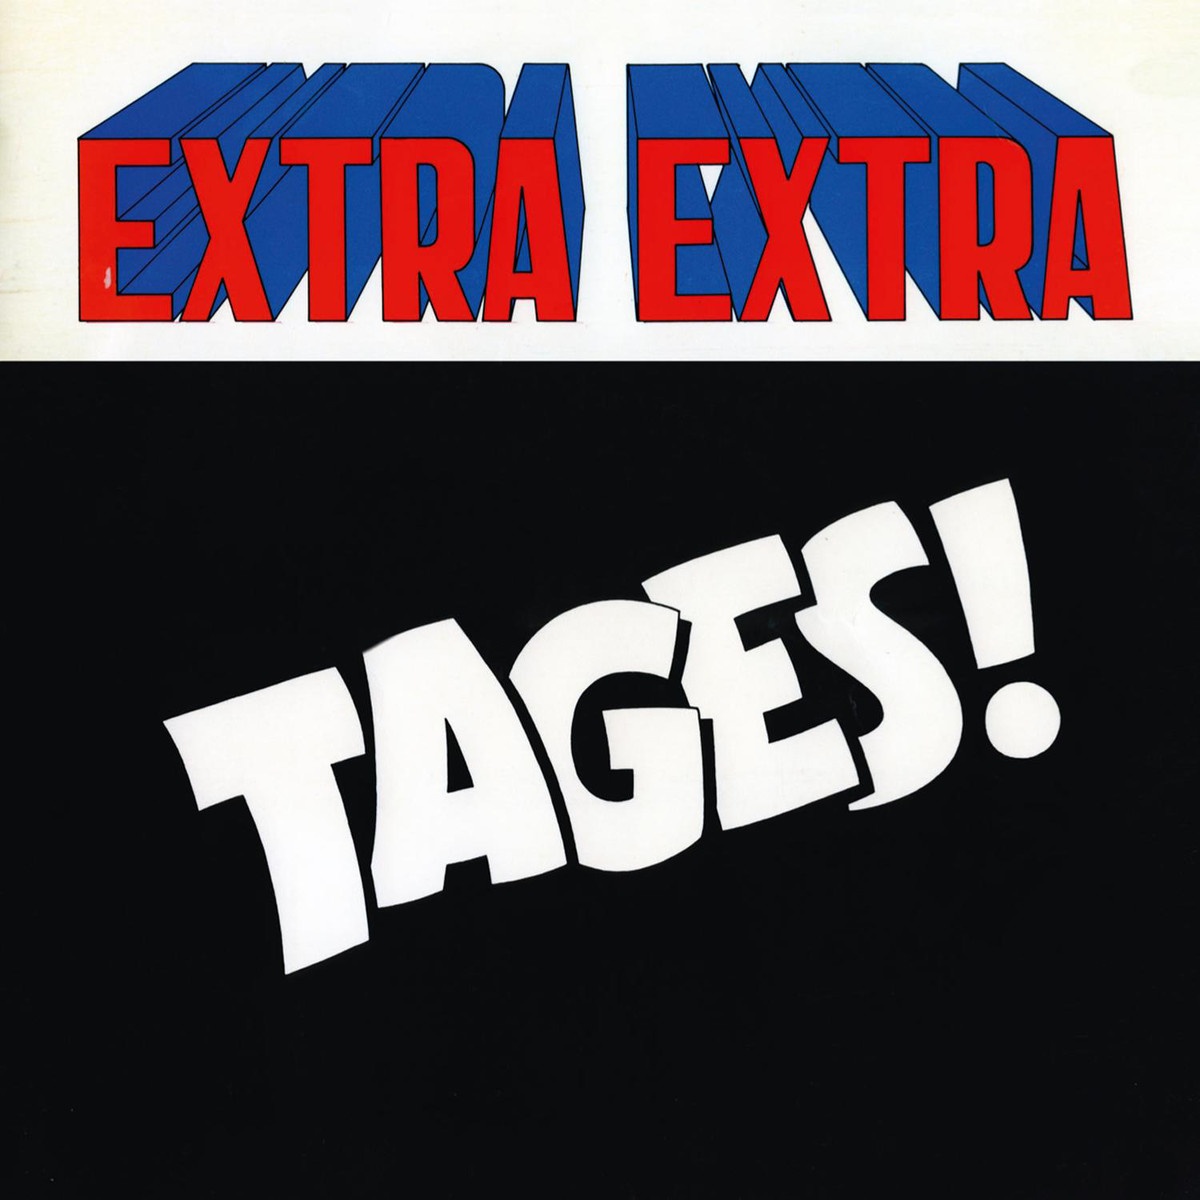 Extra extra